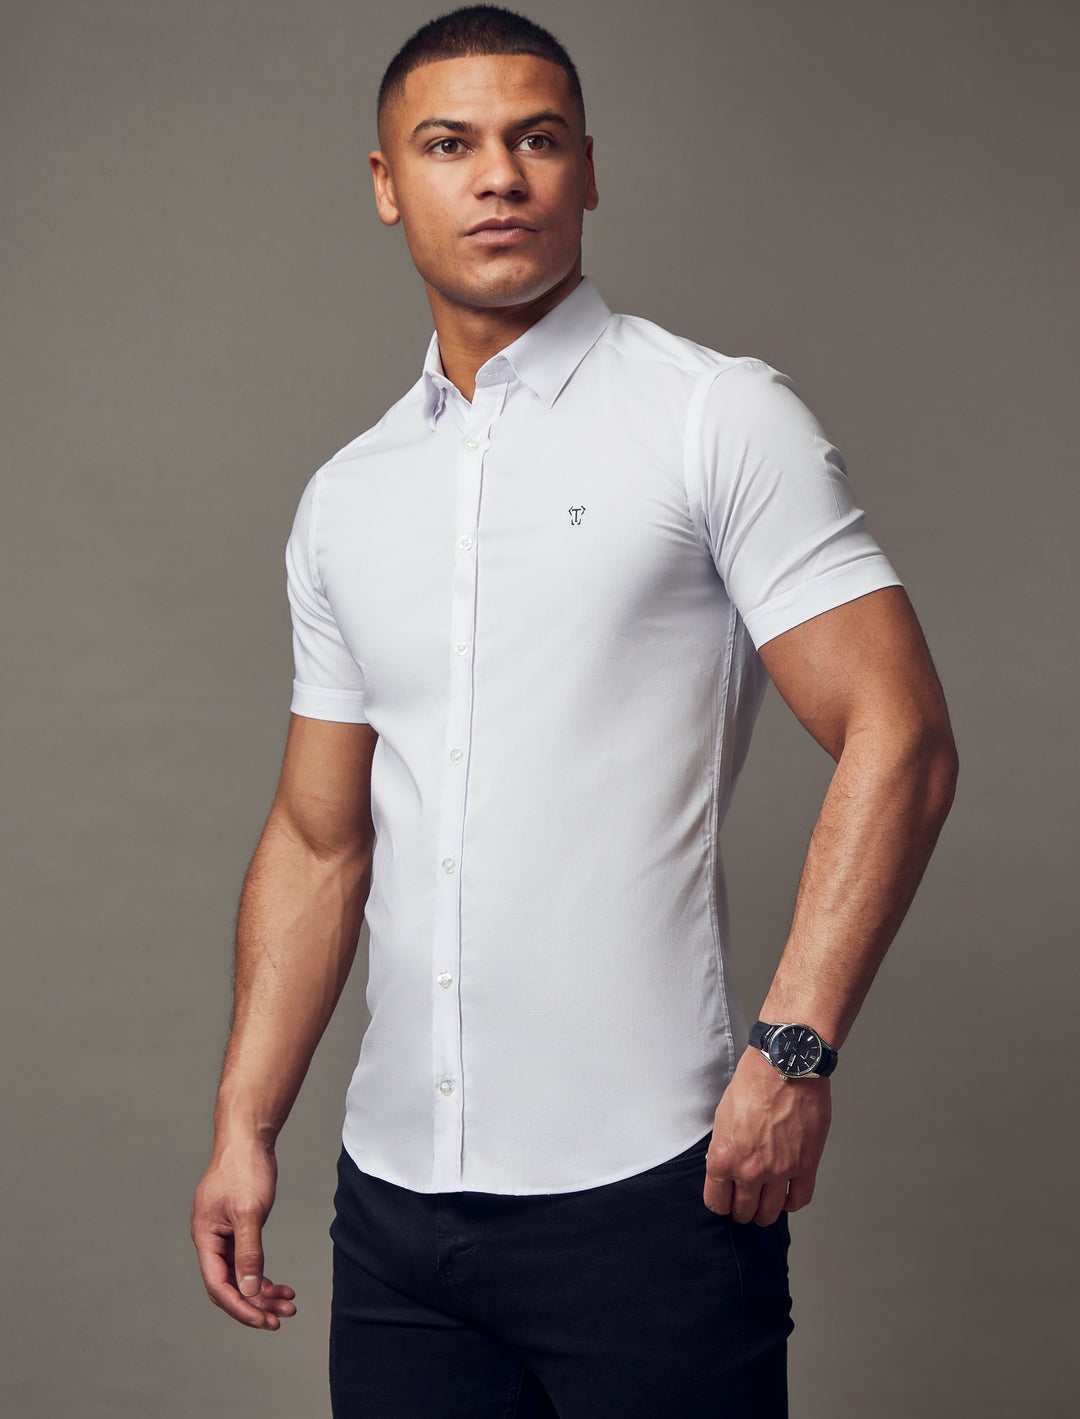 Relaxed Fit Short-sleeved shirt - White - Men